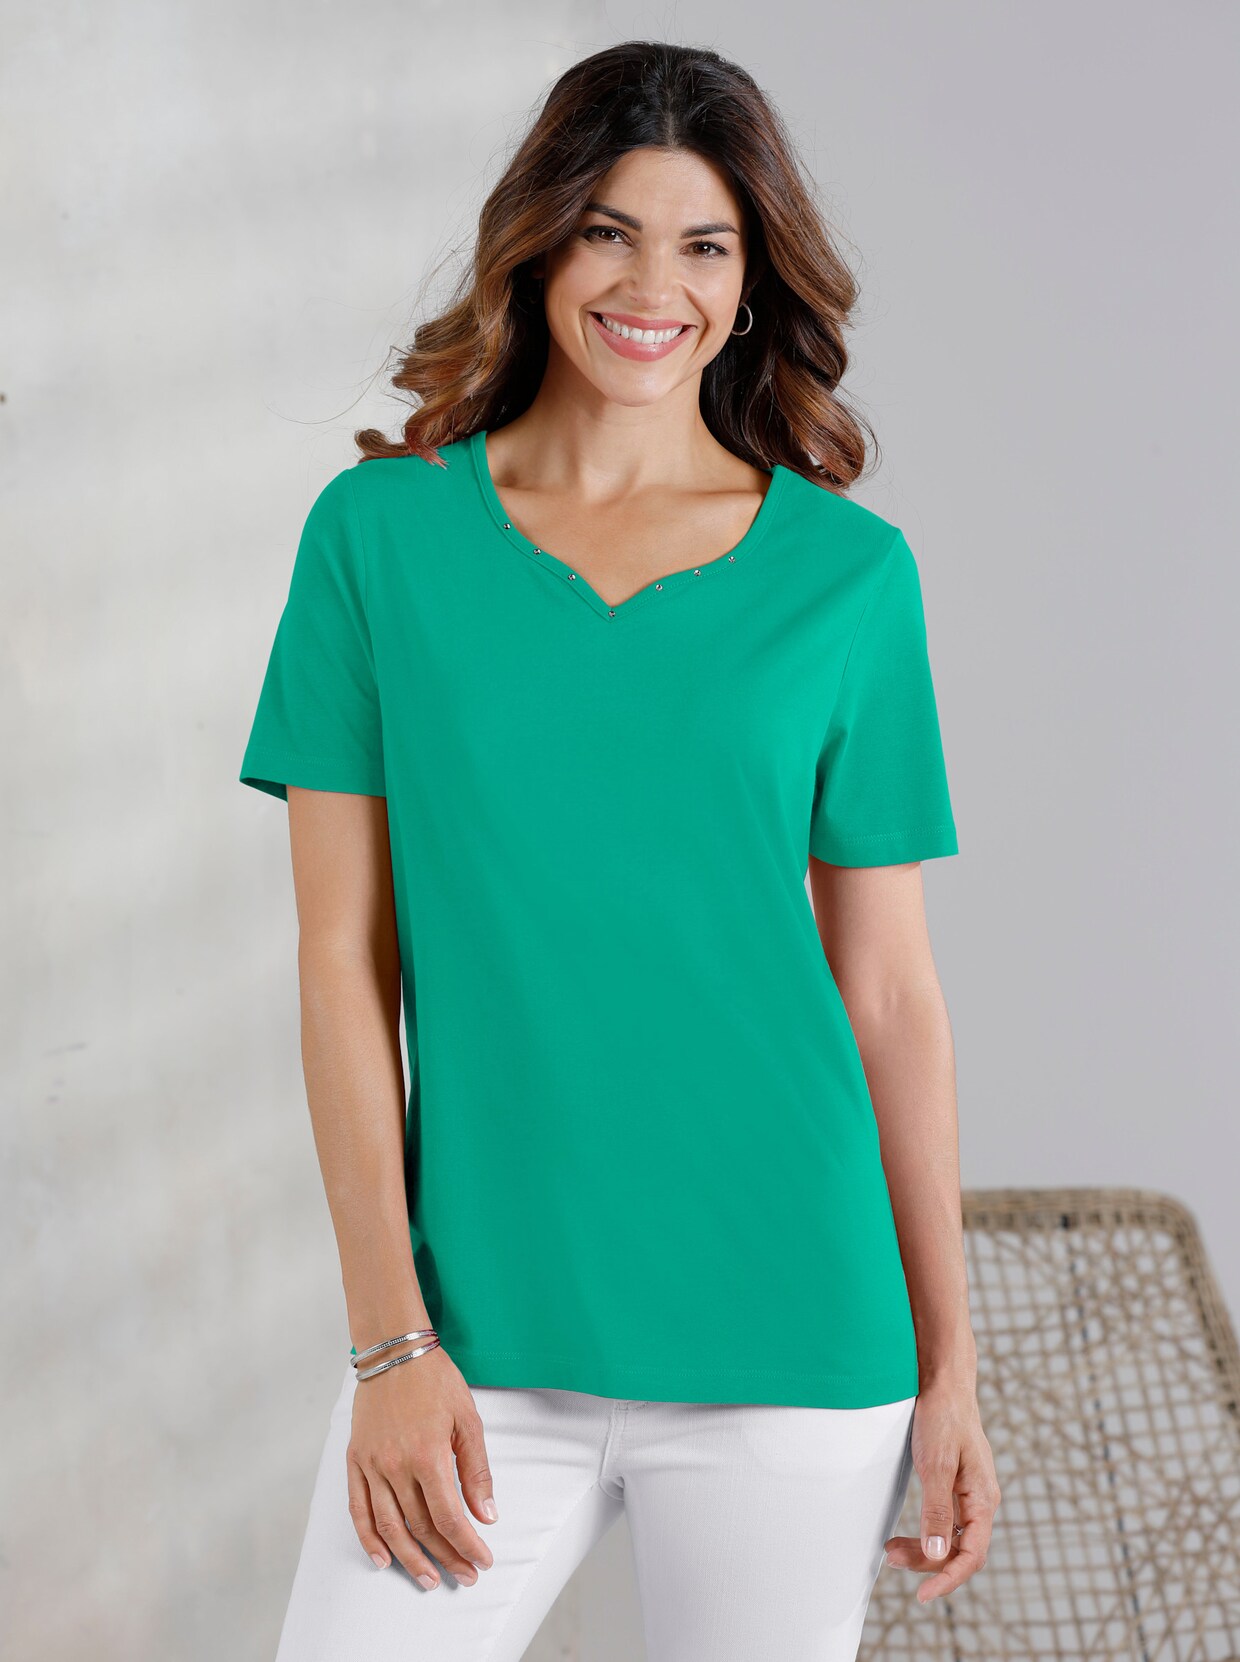 Tričko s krátkým rukávem - smaragdově zelená